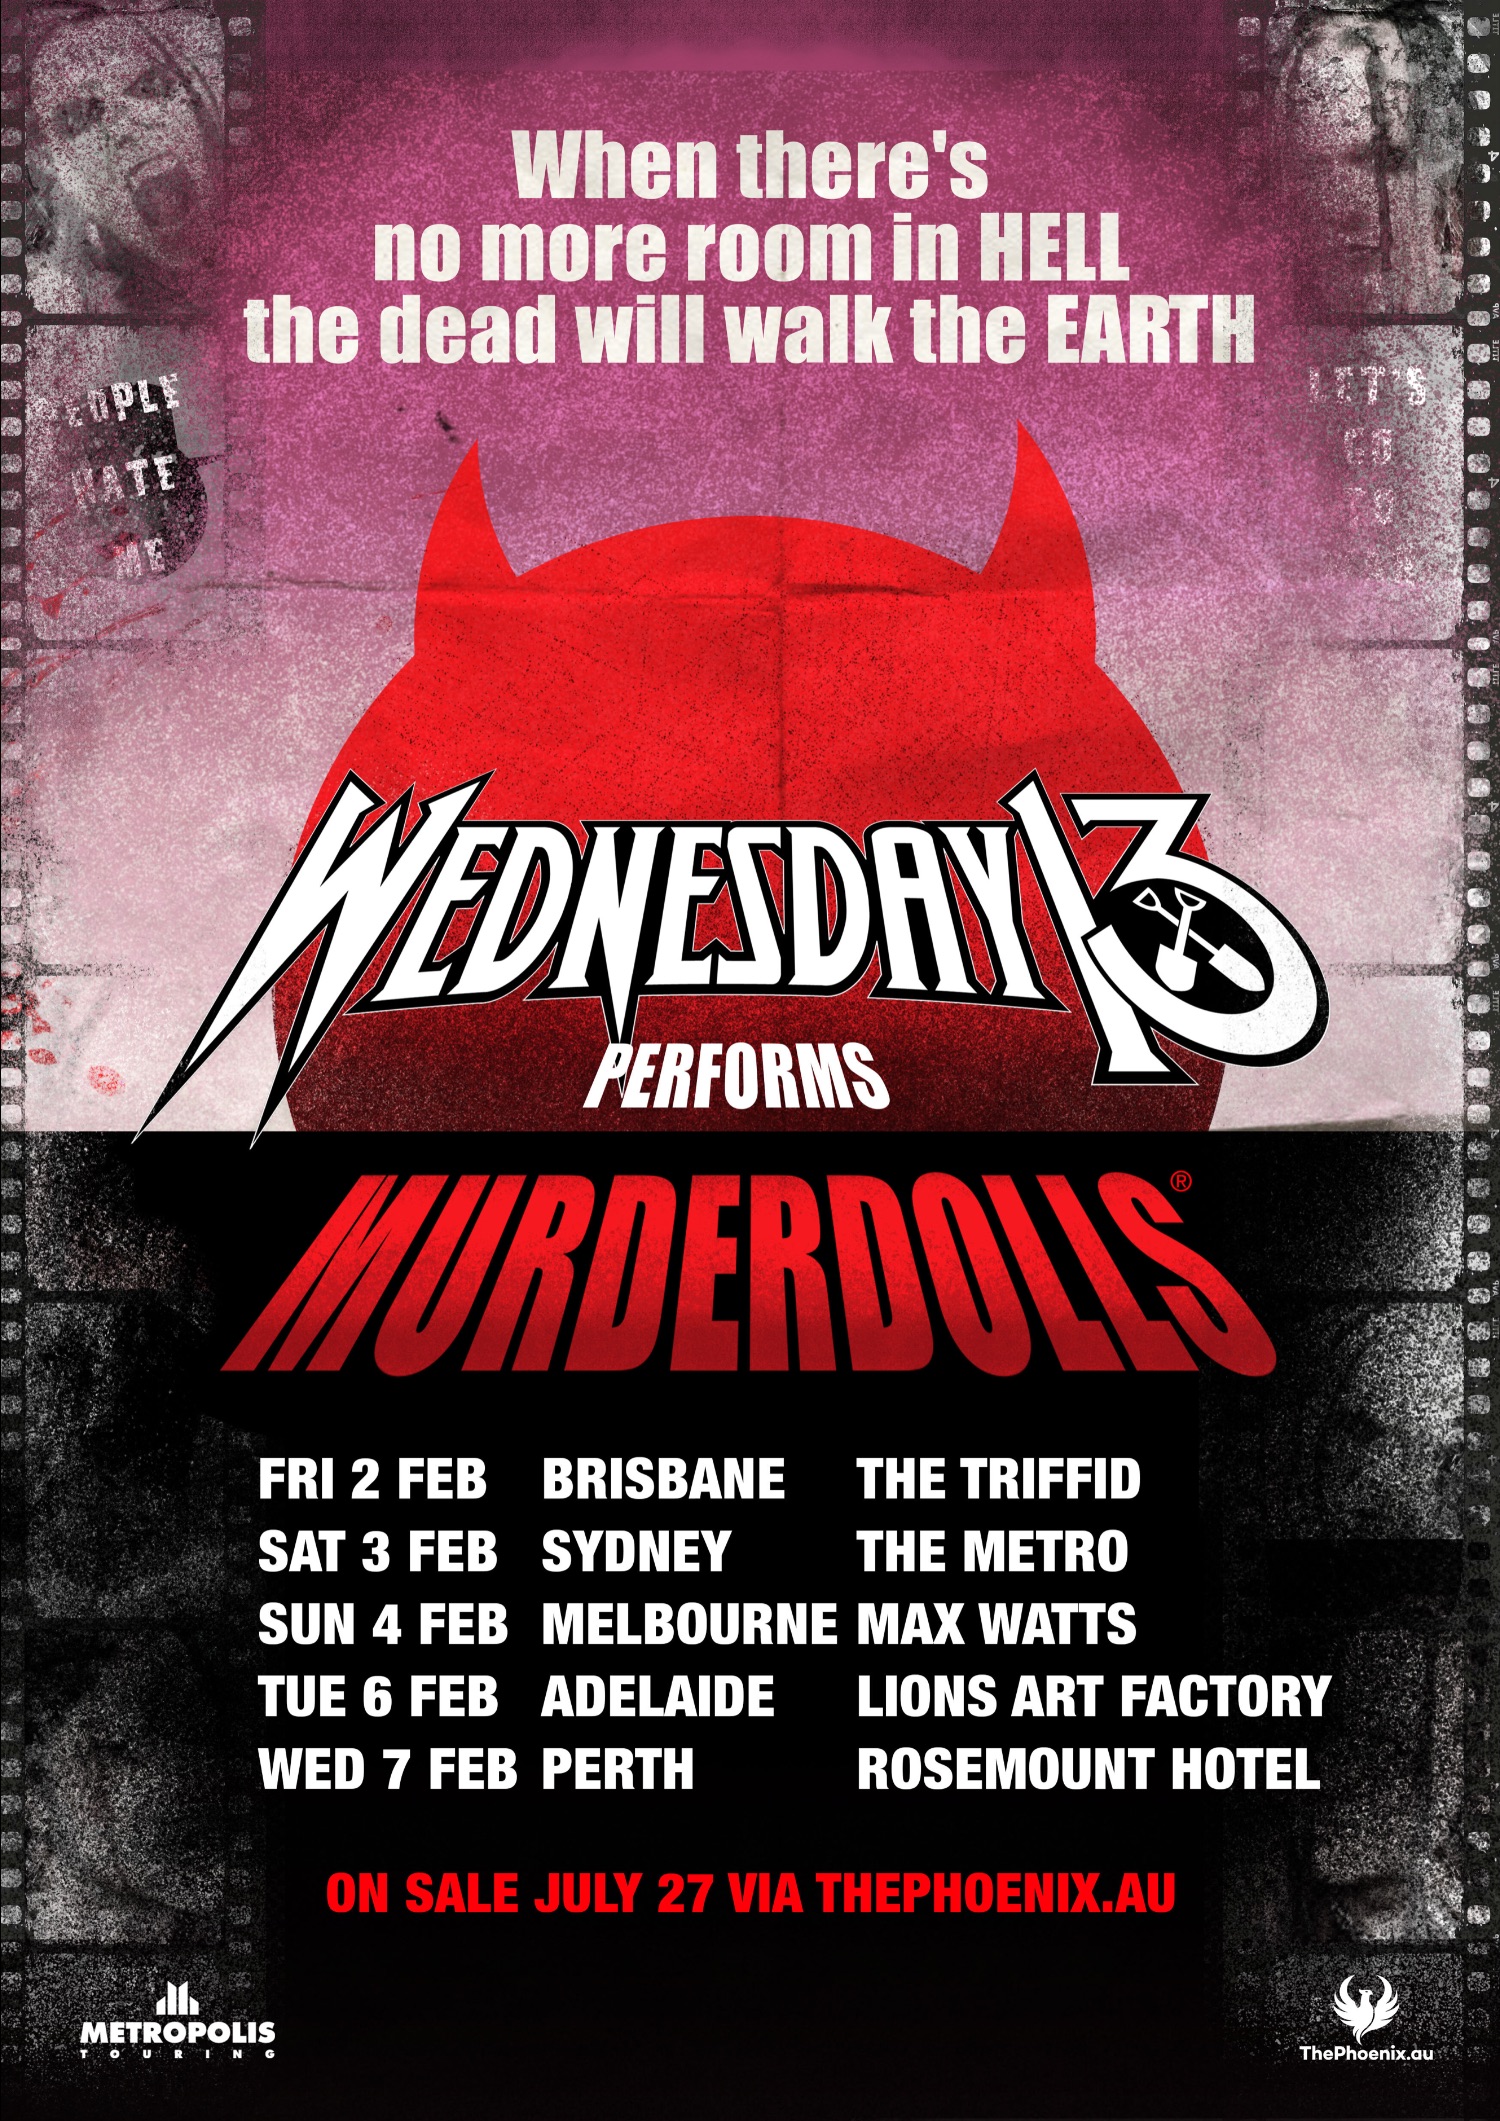 Wednesday 13 plays Murderdolls tour